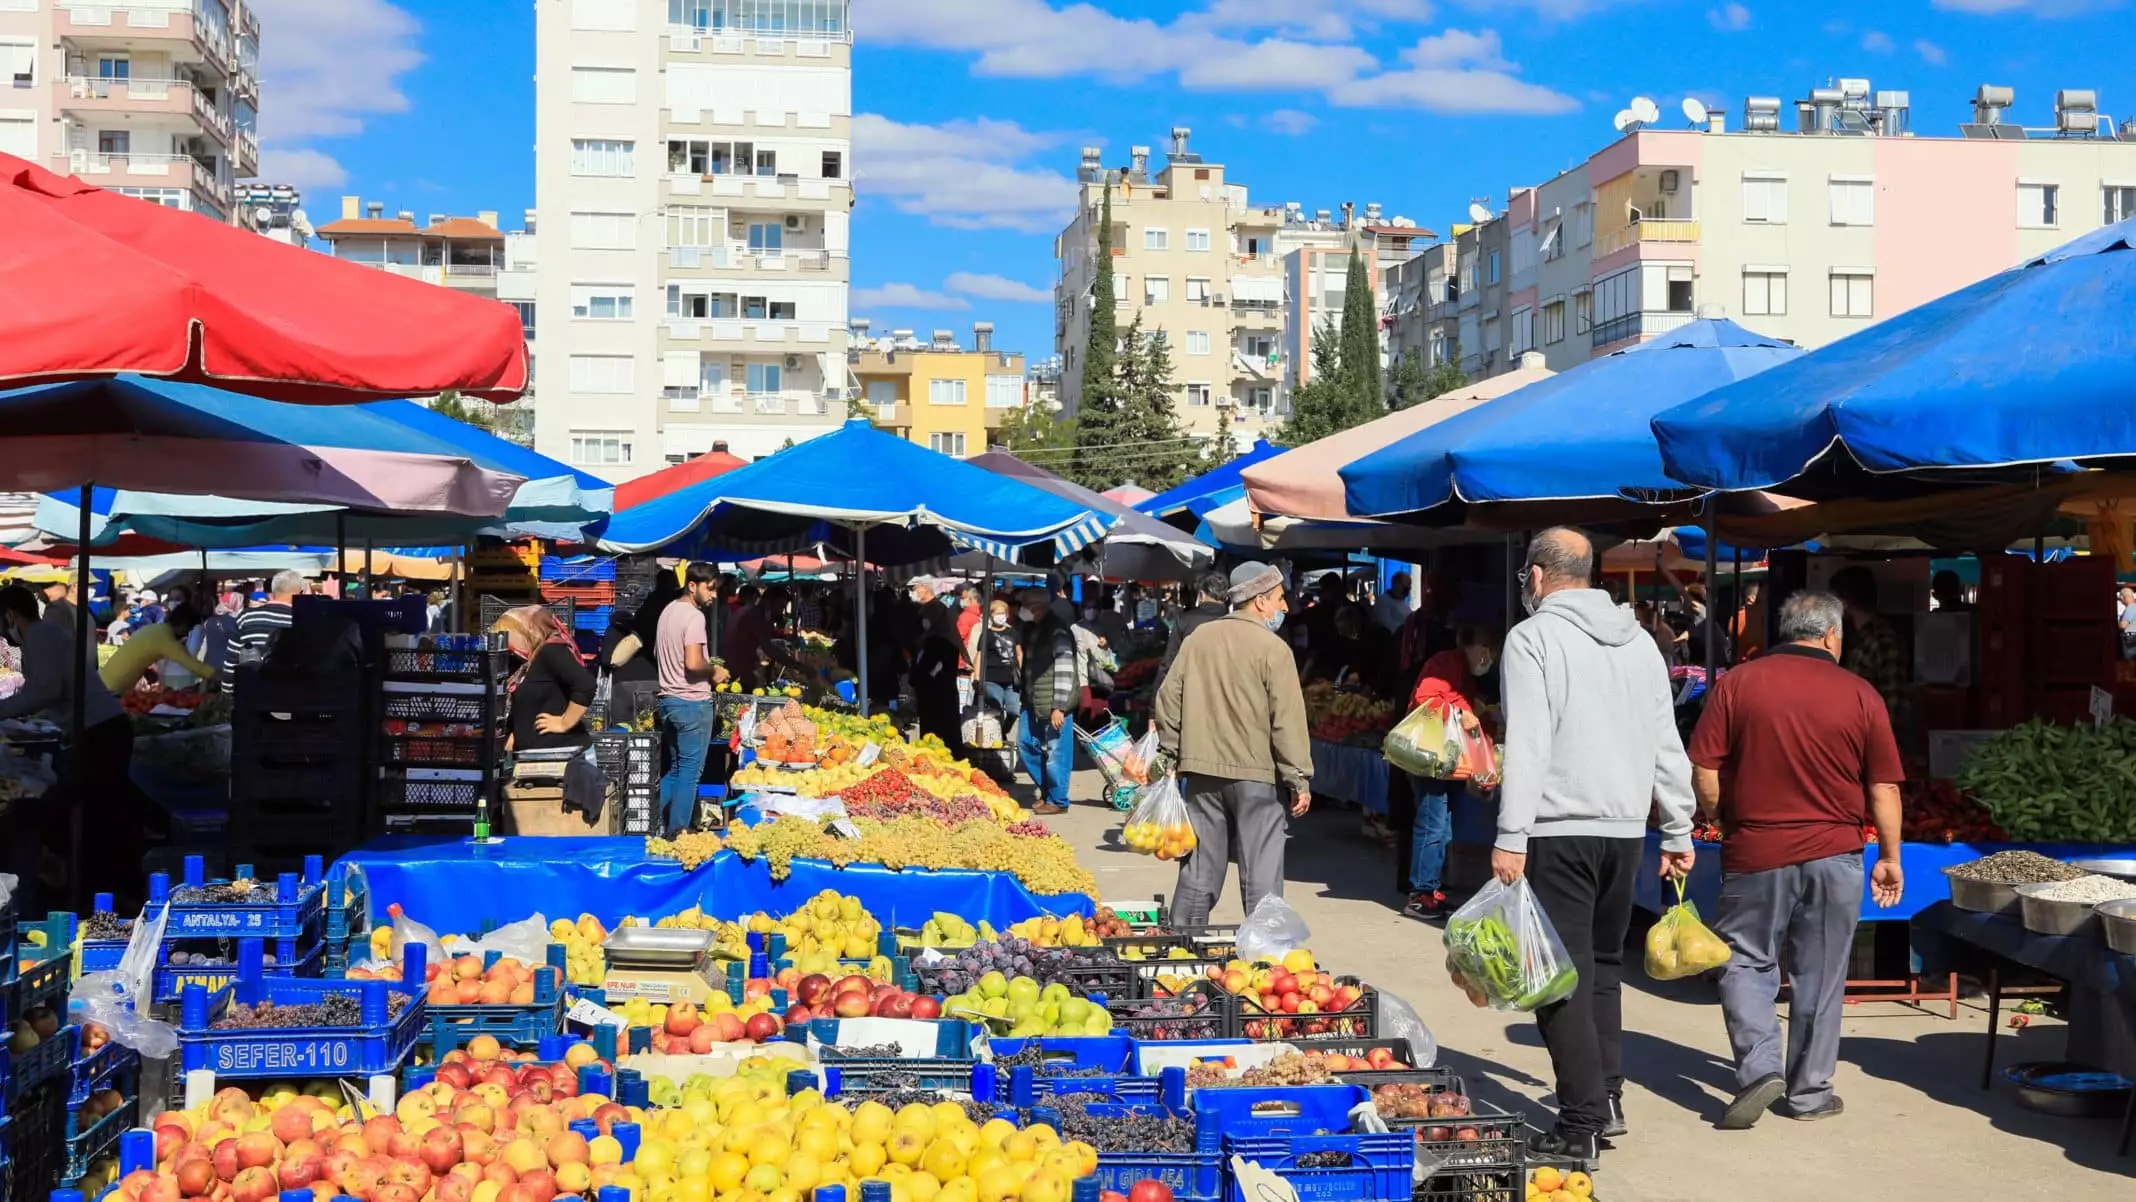 Antalya'da hava sıcaklıklarının mevsim normallerinin üzerinde seyretmesi, sebze ve meyvede üretimi ortalama yüzde 30 düşürdü. Düşen üretim, fiyatlara artış olarak yansıdı. Fiyatların ortalama 2 kat arttığı kaydedildi.